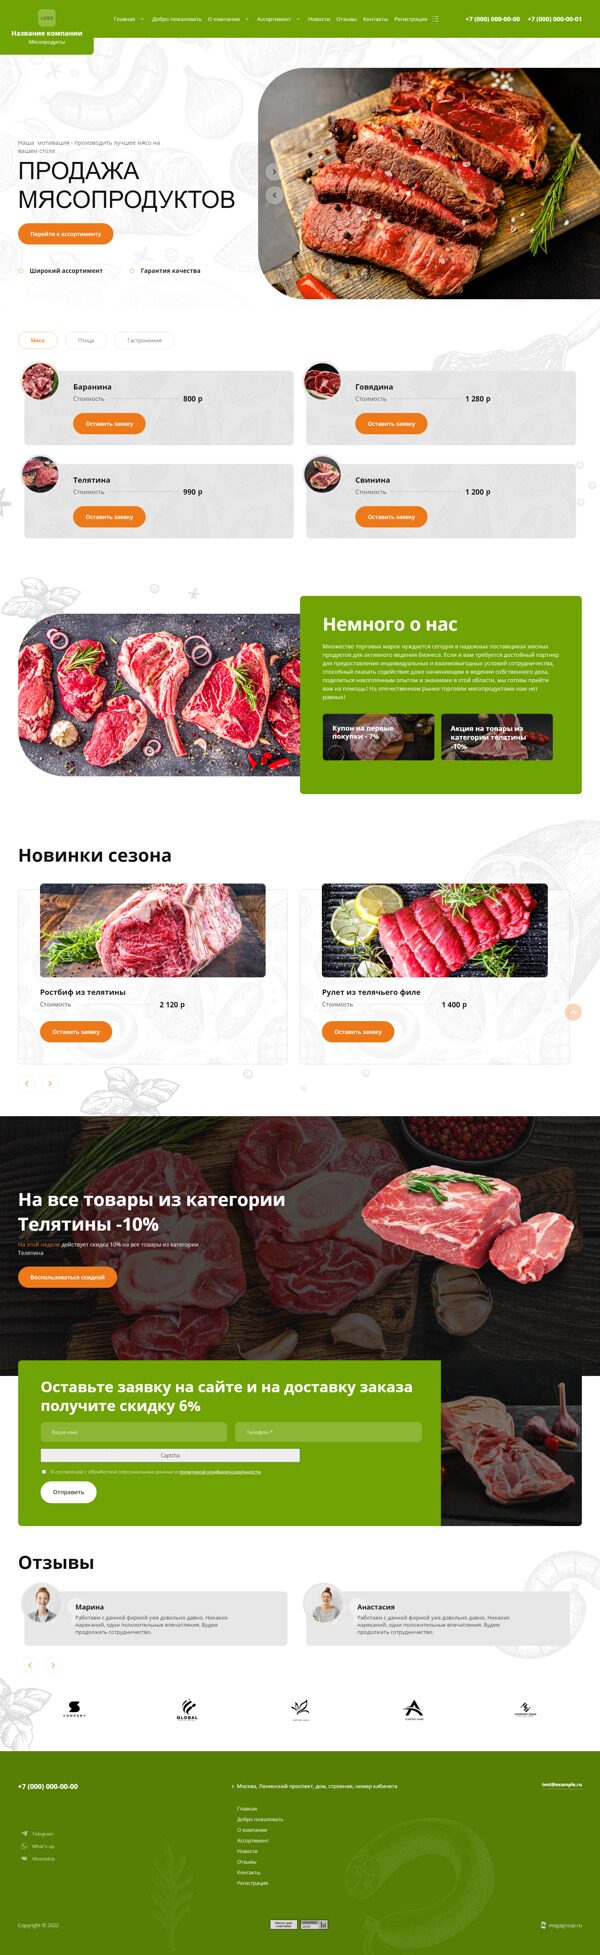 Готовый Сайт-Бизнес № 4224247 - Сайт для продажи мясных продуктов (Десктопная версия)